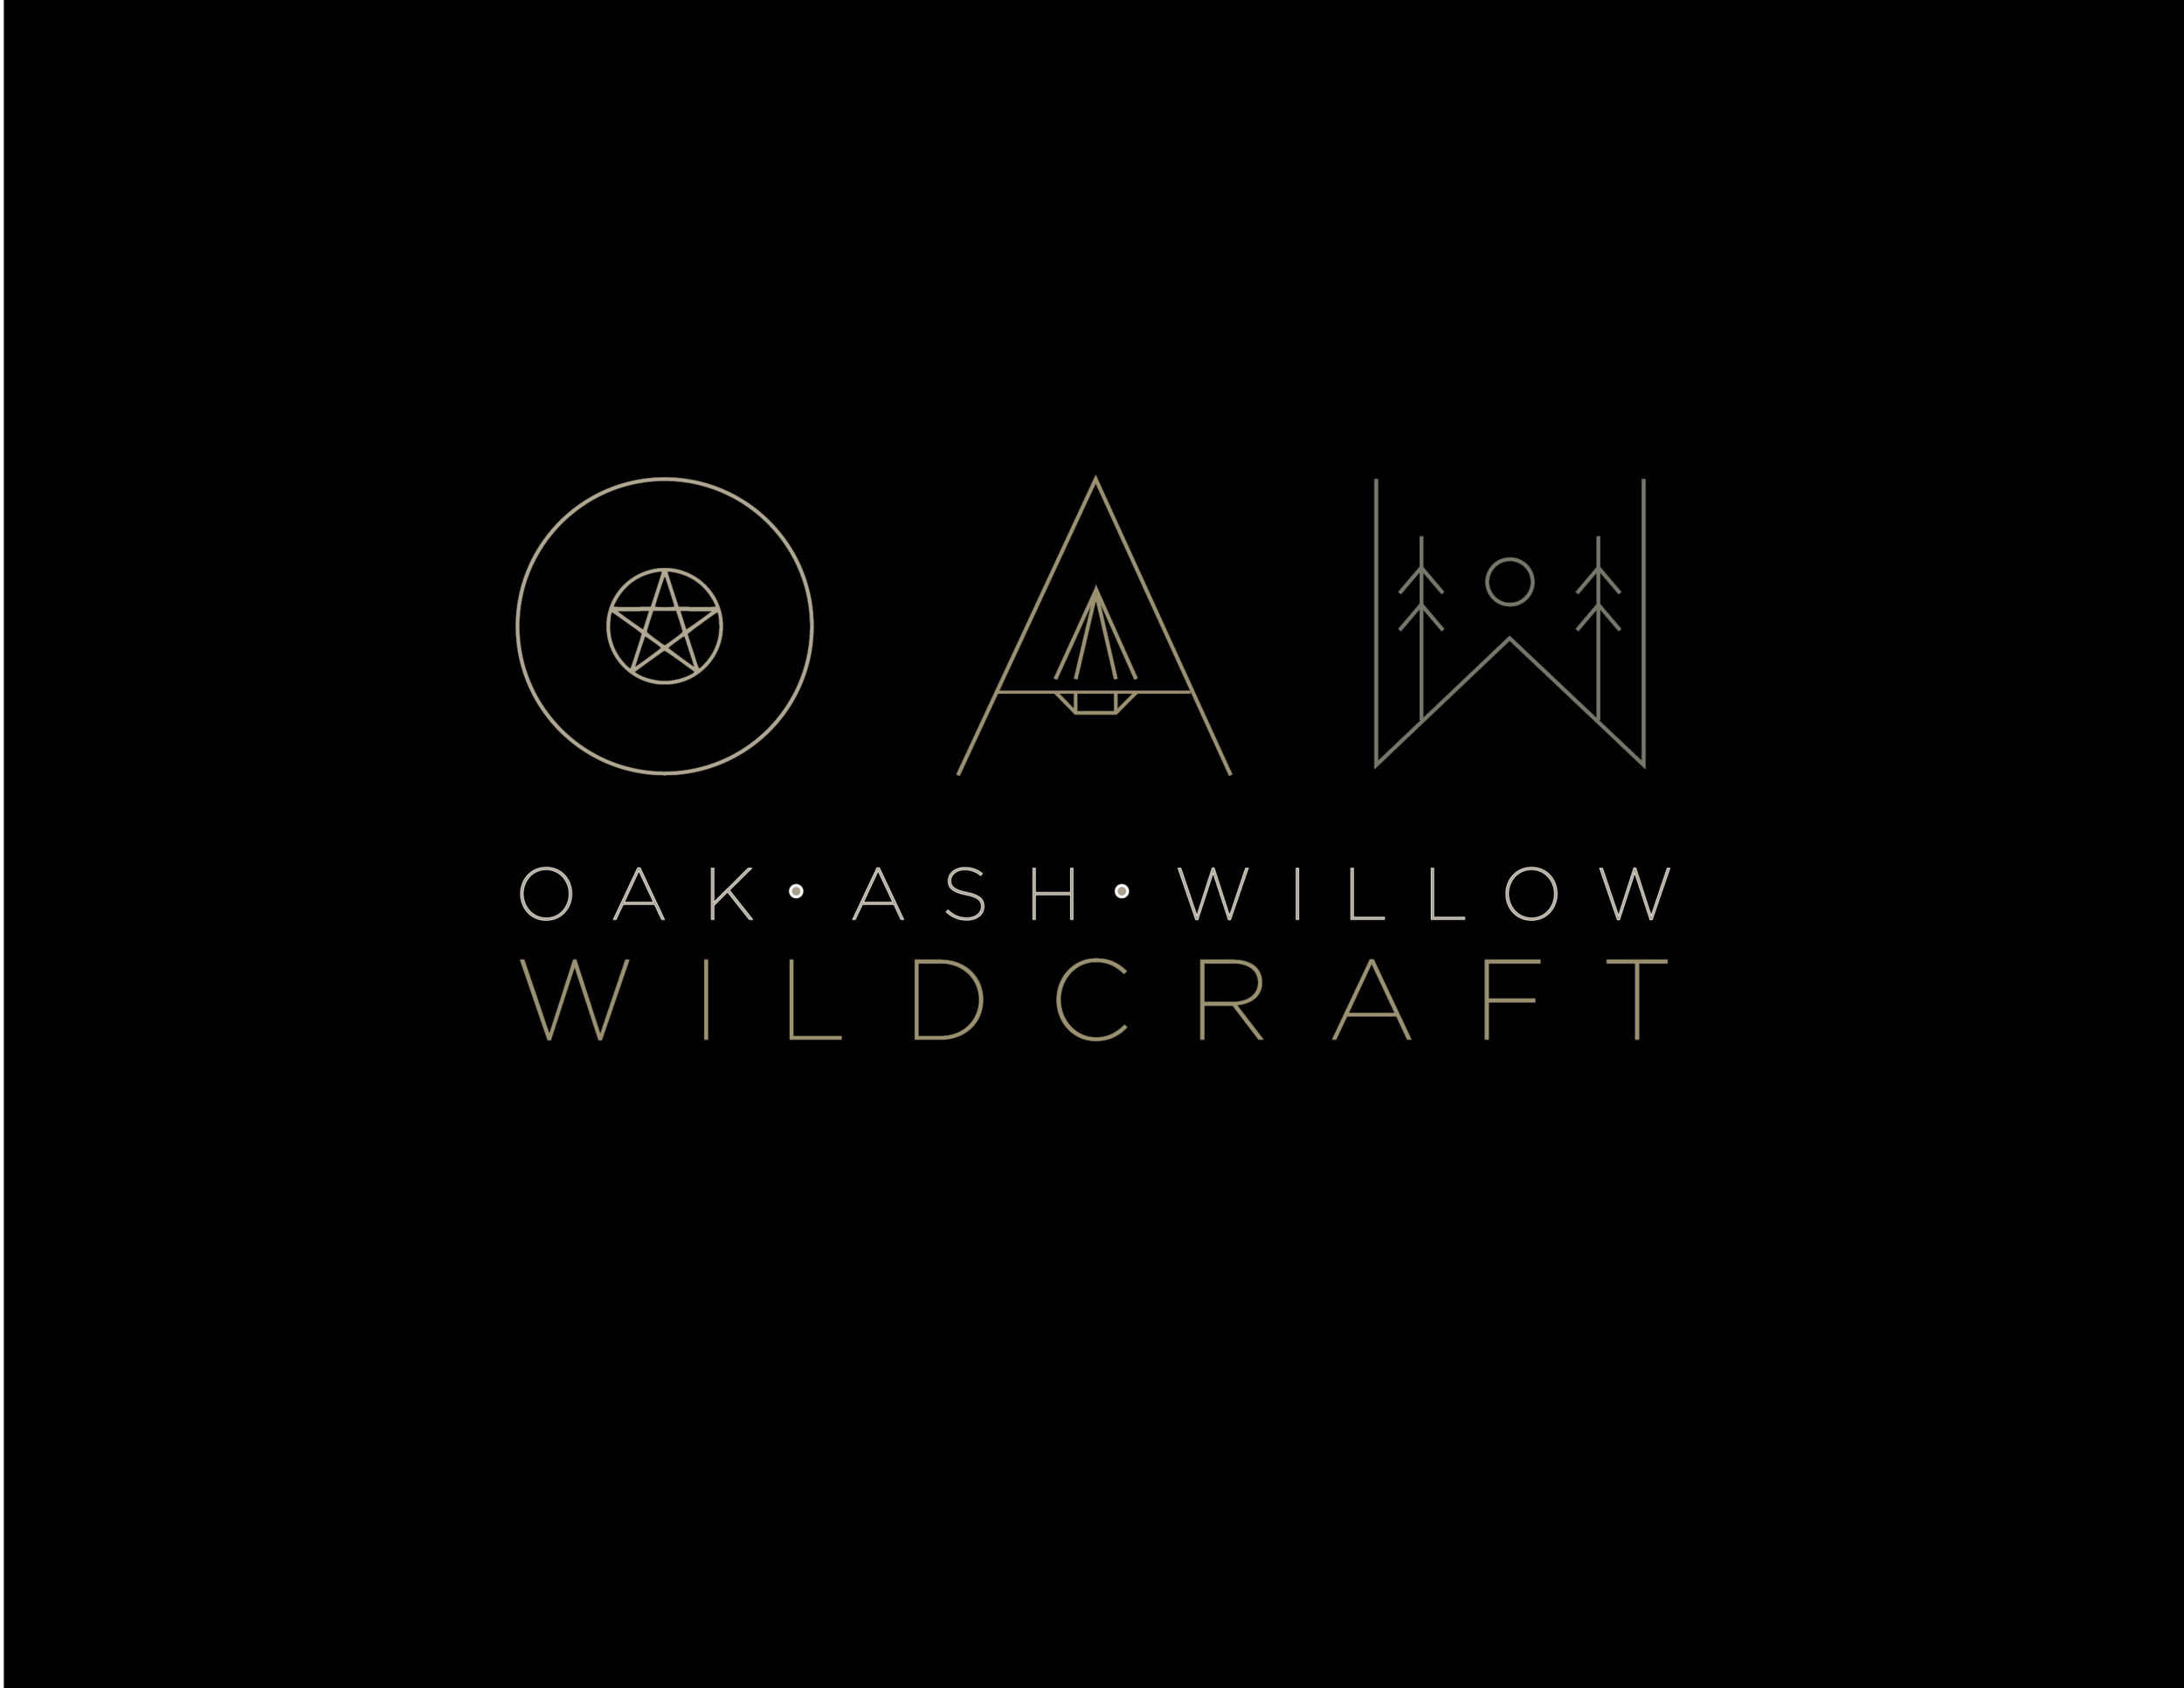 OAWW-logos-black-07.png